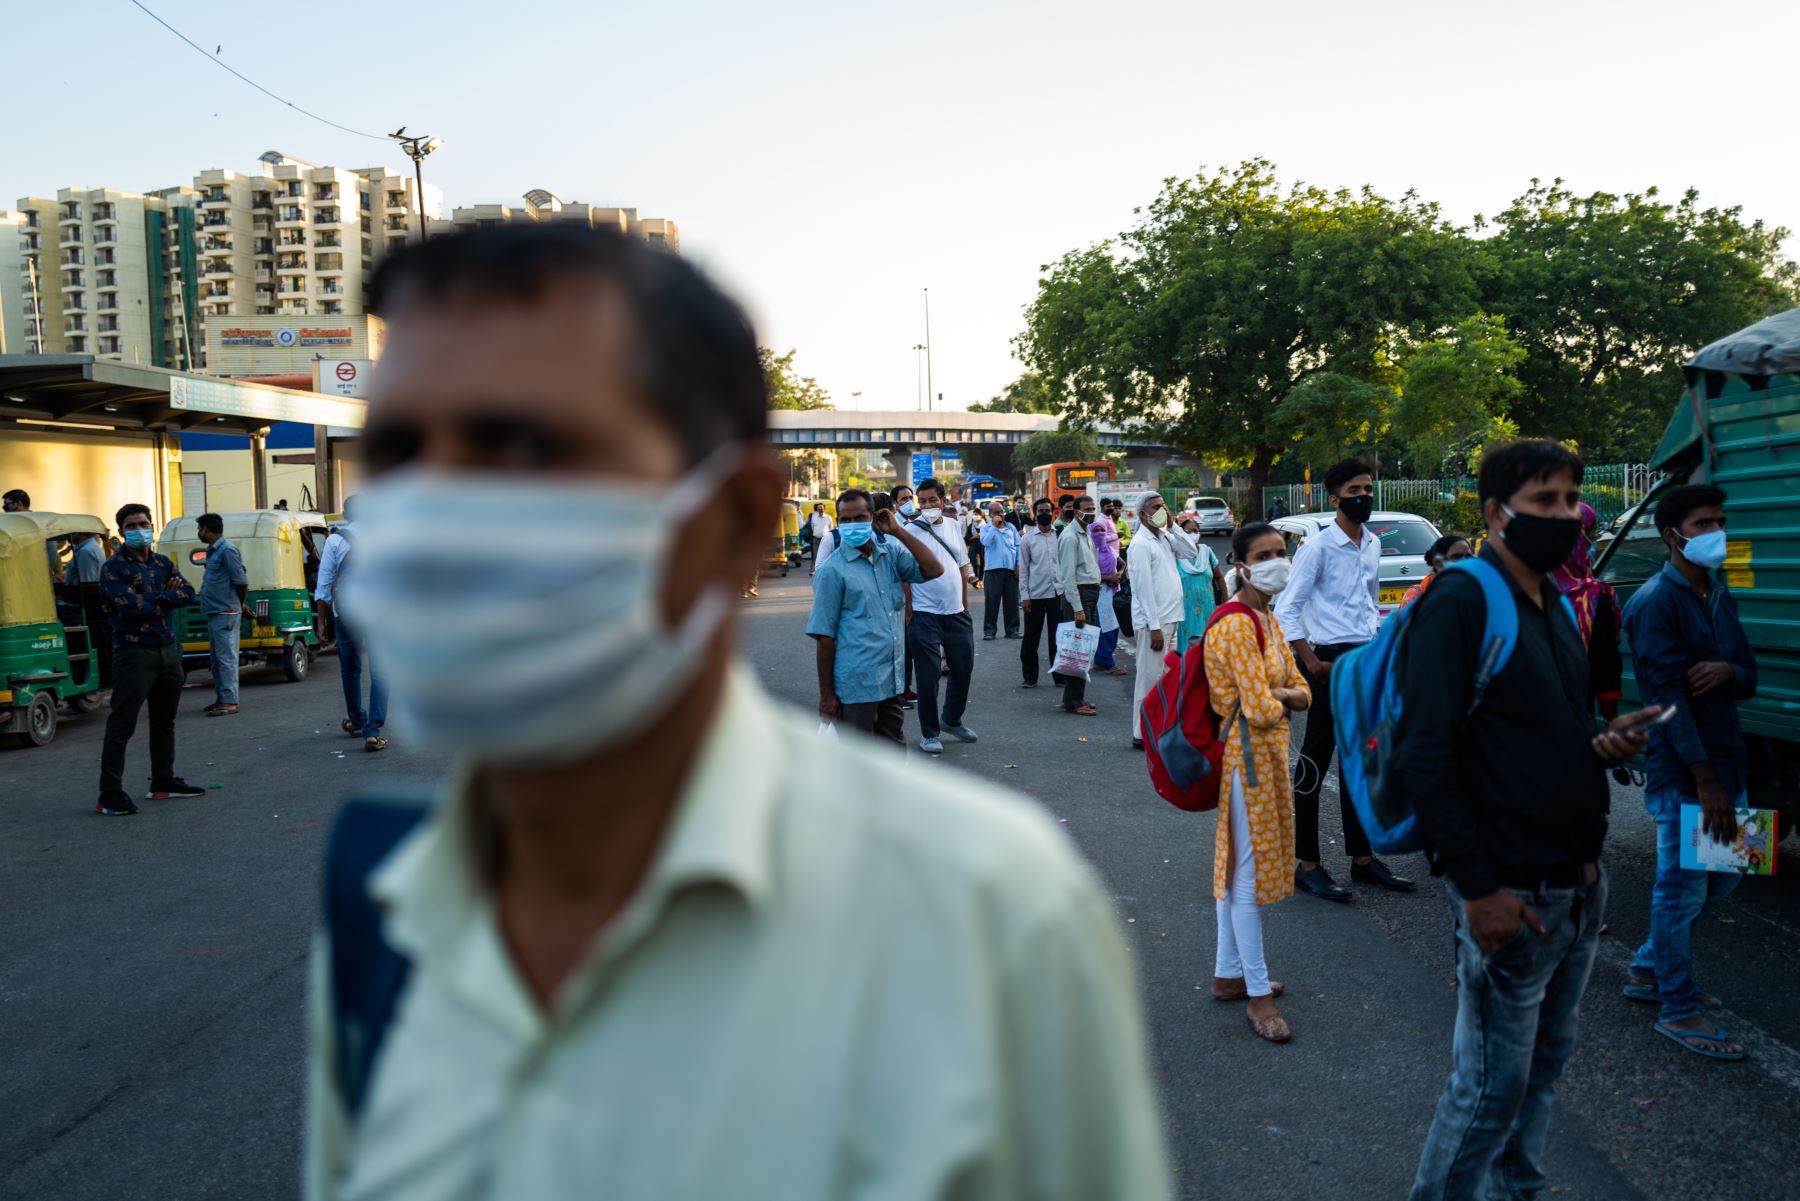 Los usuarios del transporte usan mascarillas como medida preventiva contra el coronavirus mientras esperan un autobús en una calle de Nueva Delhi. Foto: AFP